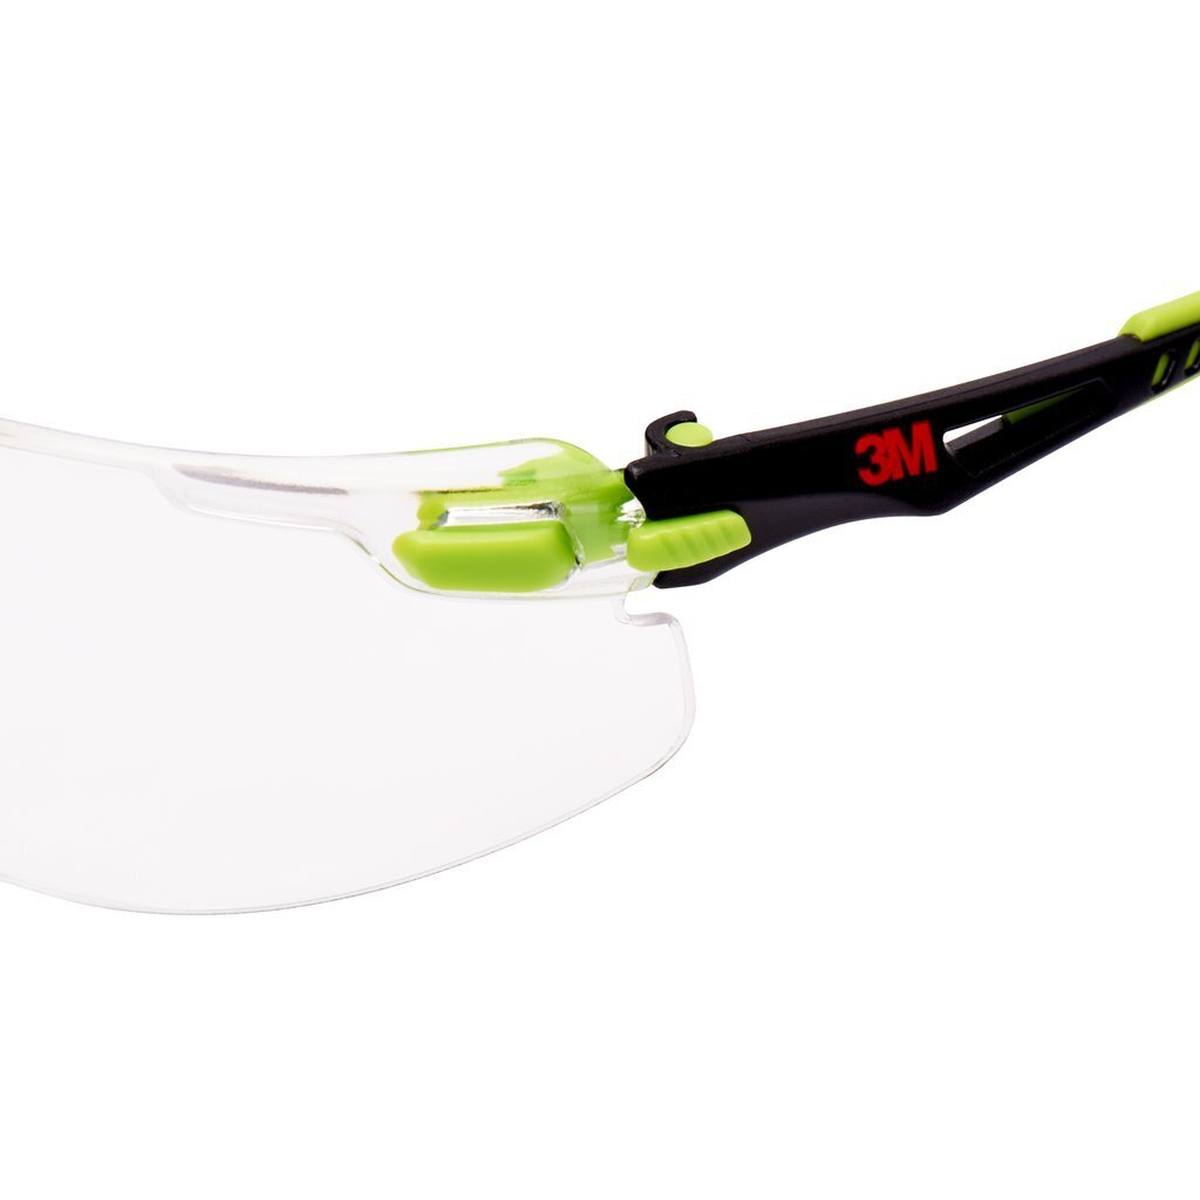 3M Solus 1000 Schutzbrille, grün/schwarze Bügel, Scotchgard Anti-Fog-/Antikratz-Beschichtung (K&N), transparente Scheibe, S1201SGAF-EU